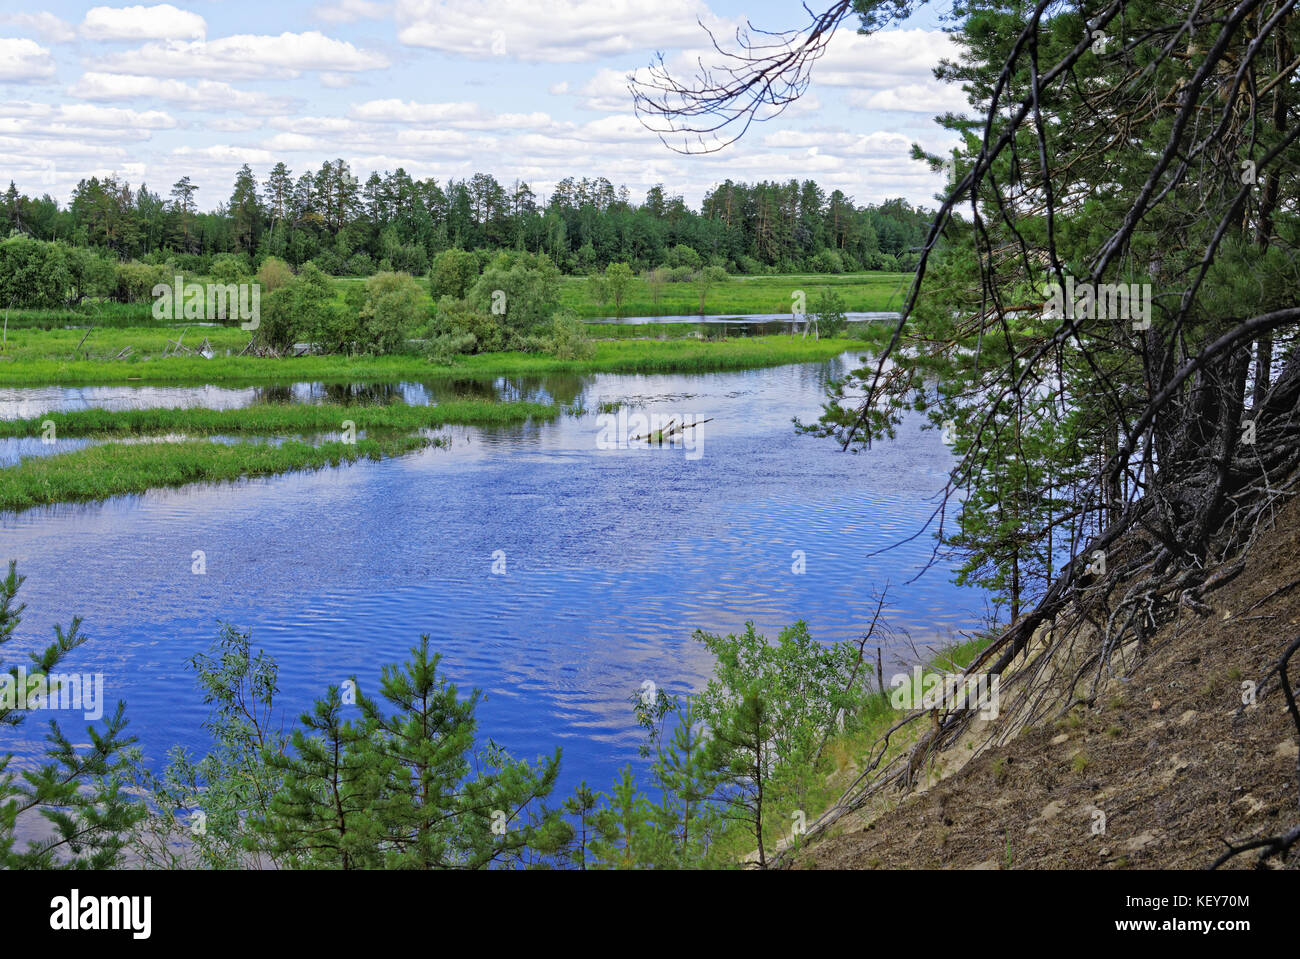 La vallée de la rivière de Sibérie Konda sur une journée ensoleillée Banque D'Images